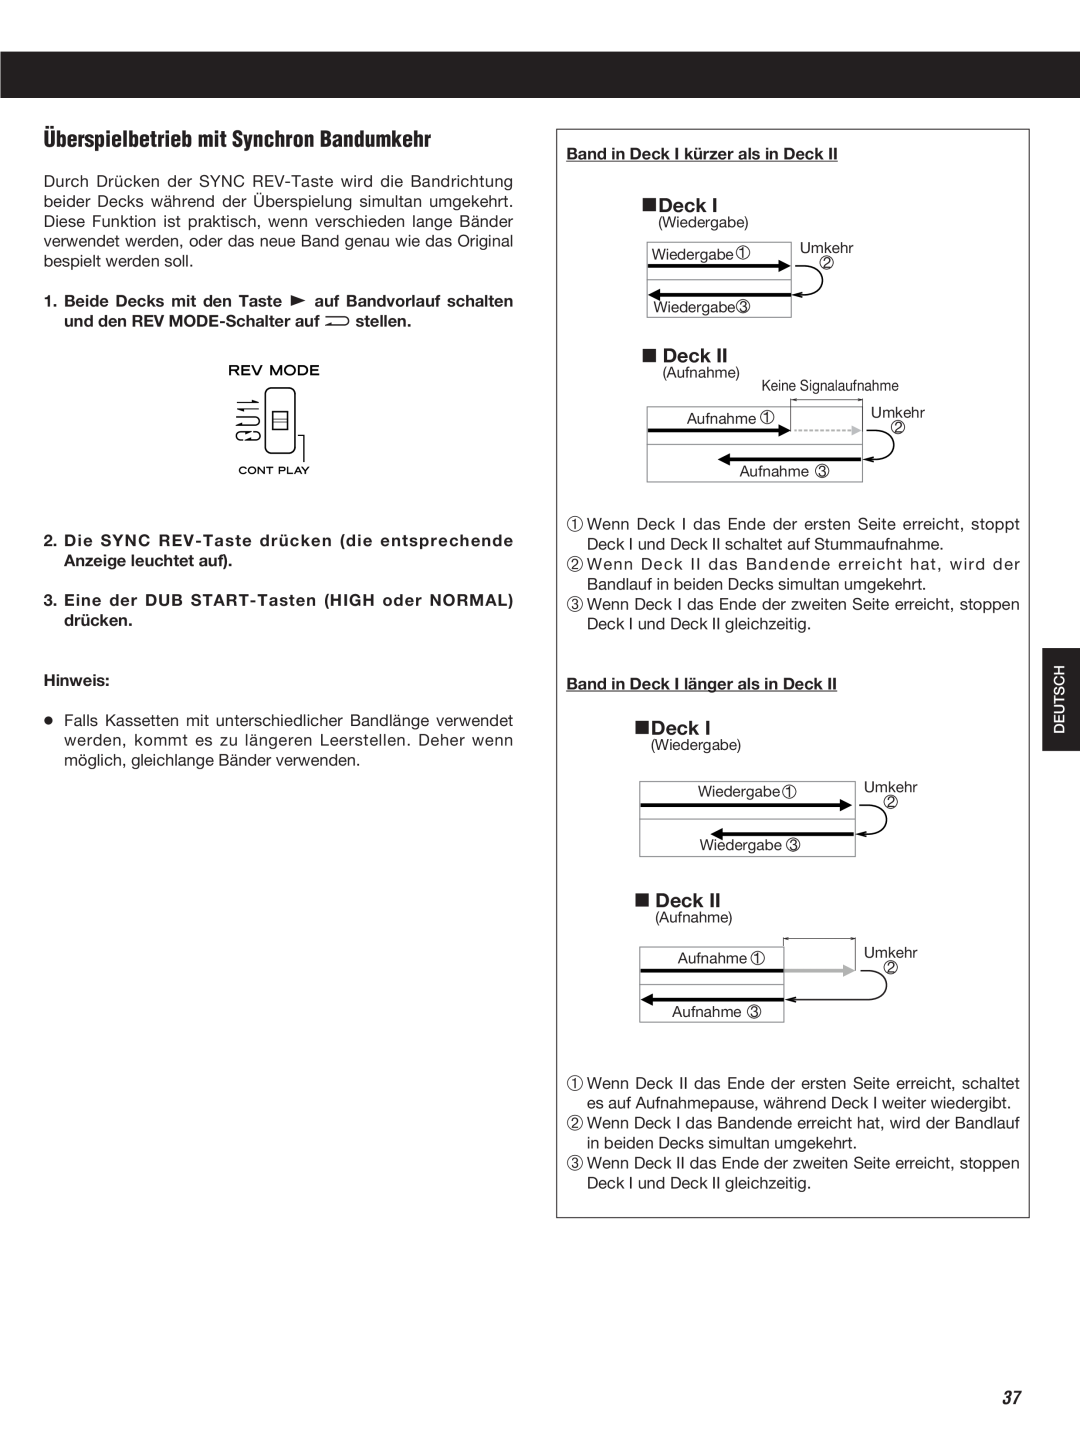 Teac W-860R owner manual Überspielbetrieb mit Synchron Bandumkehr, Deck 